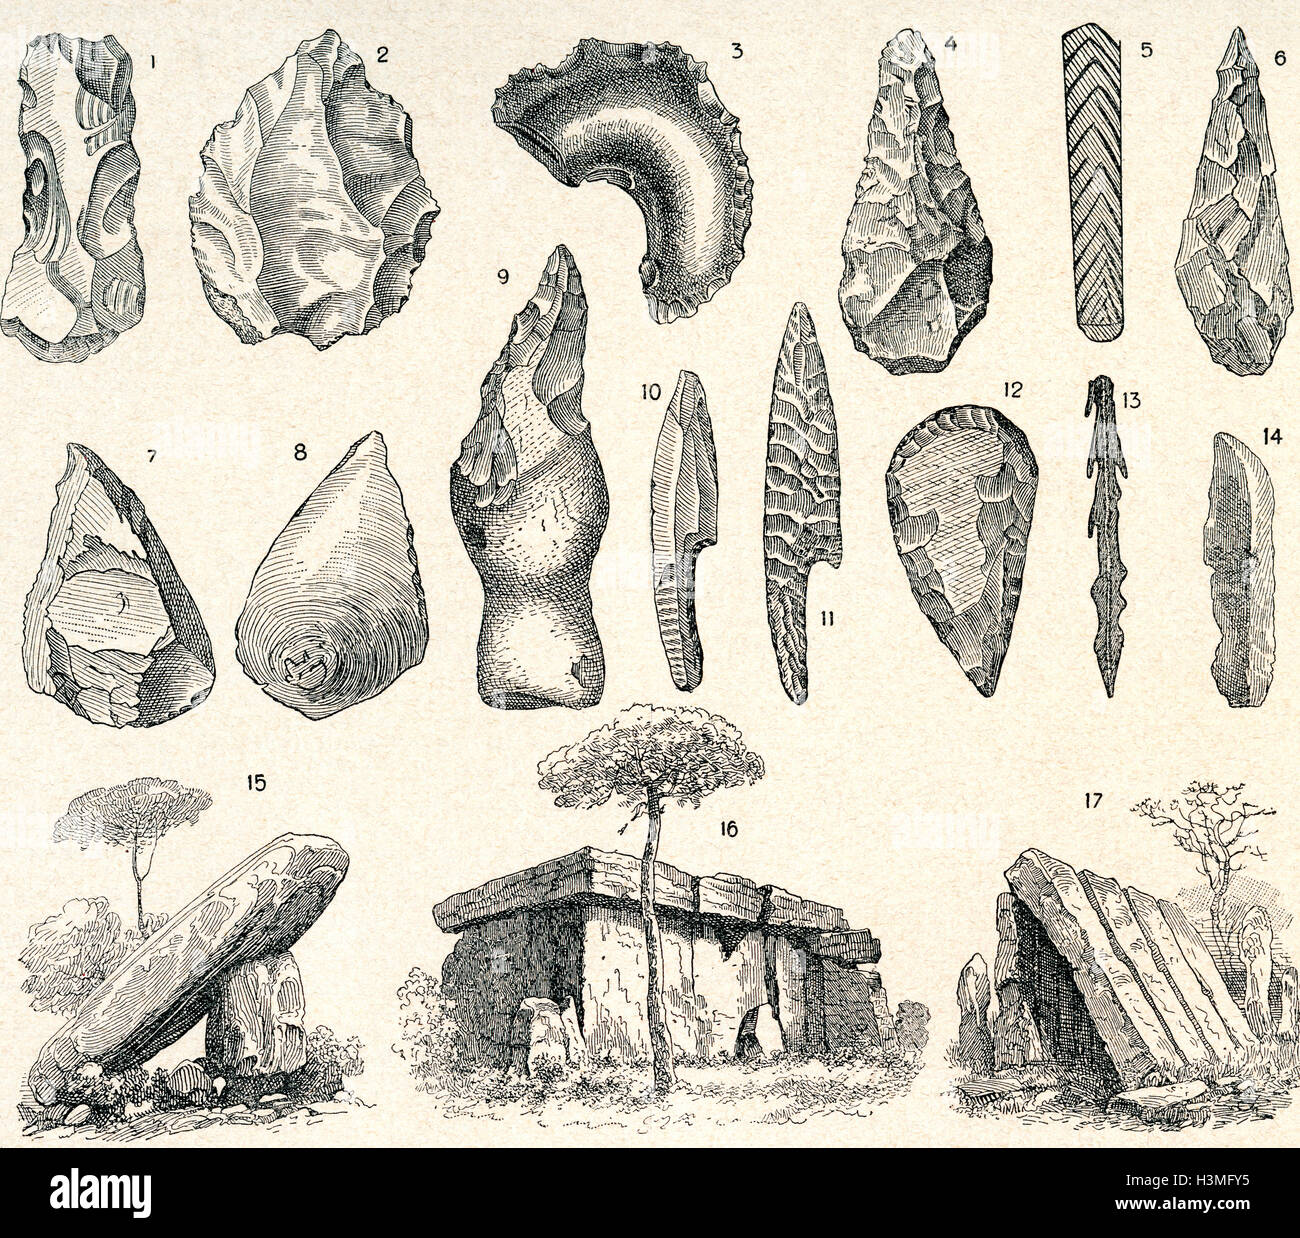 Armas de la Edad de Piedra, las herramientas y la arquitectura. Foto de stock